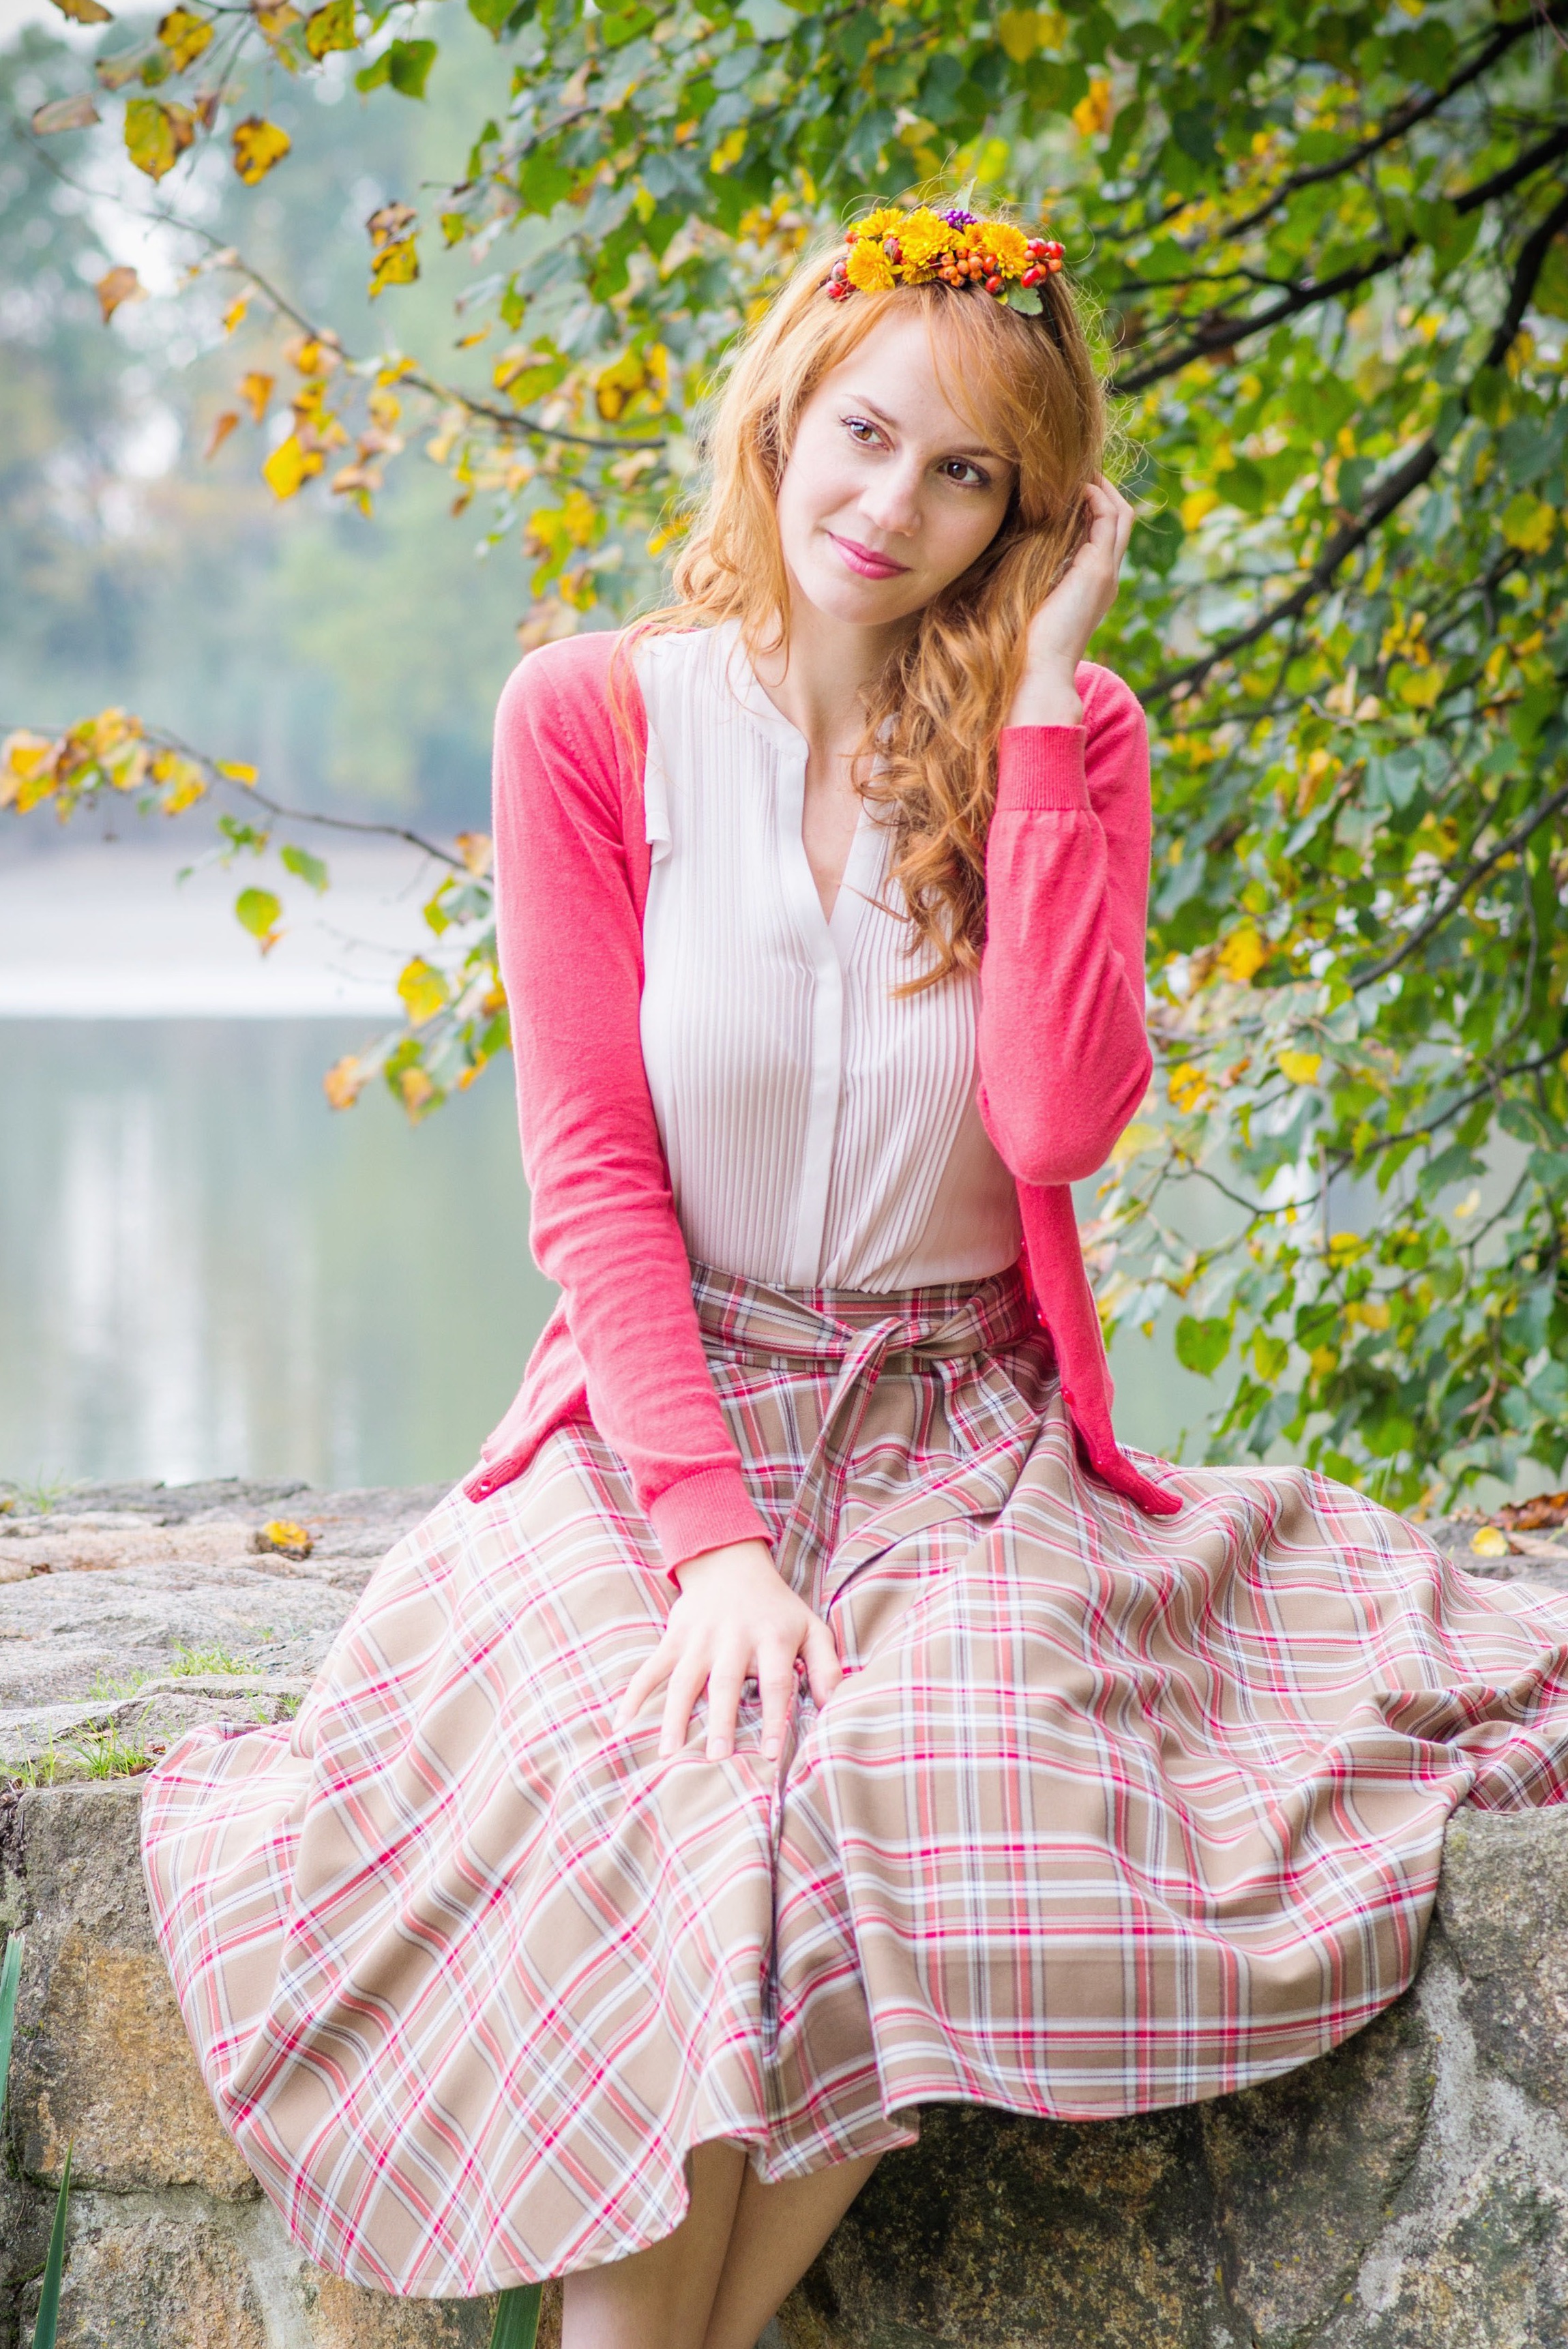 Kolová sukně skotská kostka hnědá - více barev Barva jako na obrázku, 40